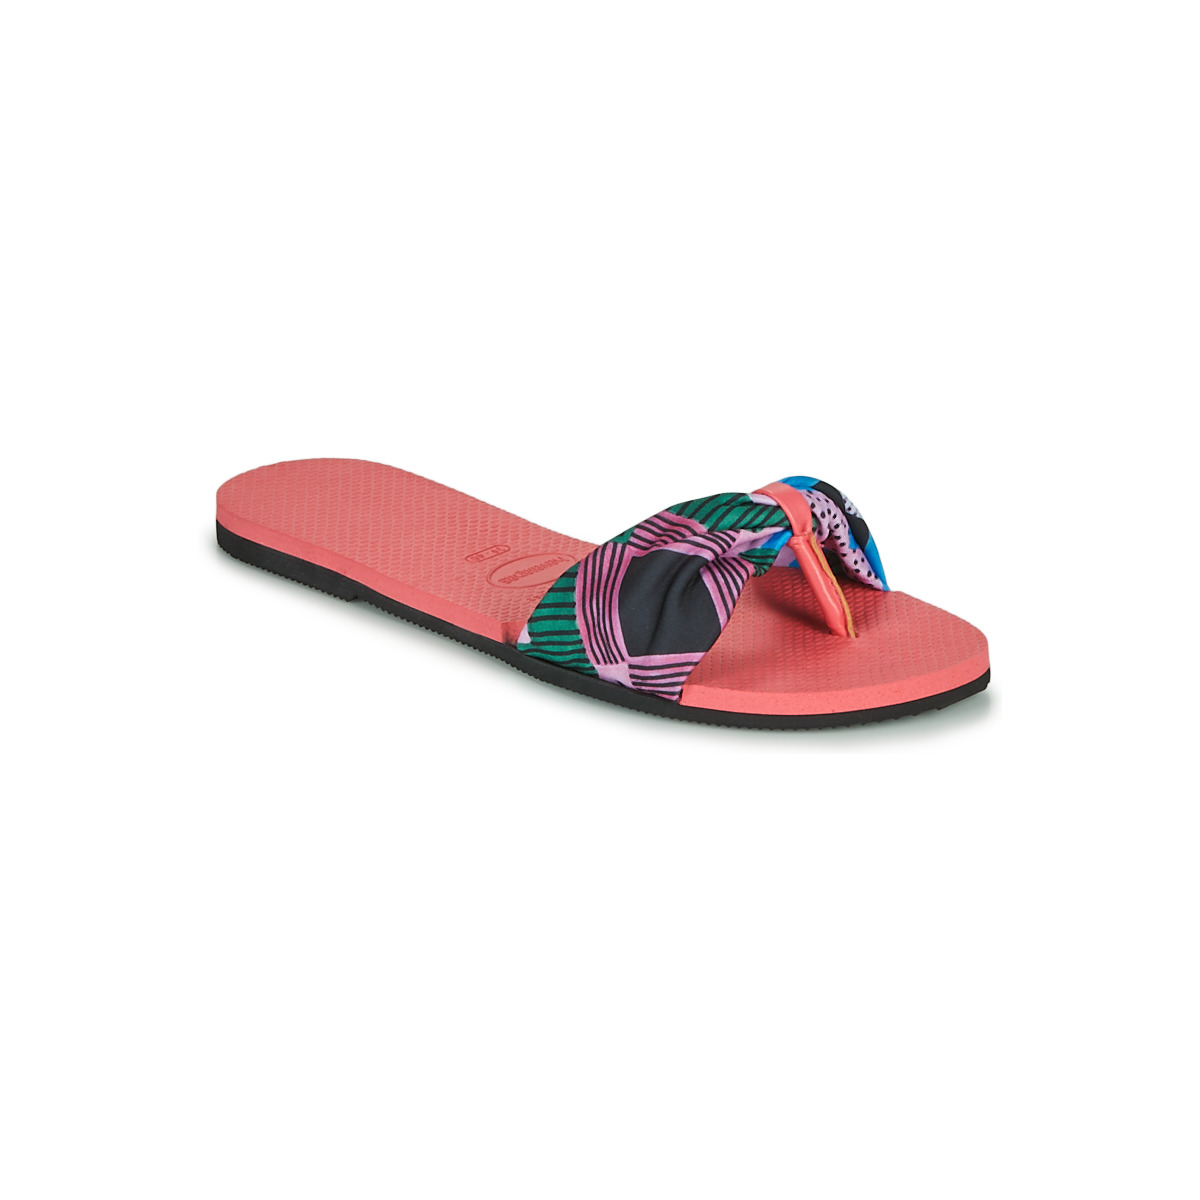 Shoes Women Flip flops Havaianas YOU SAINT TROPEZ Pink